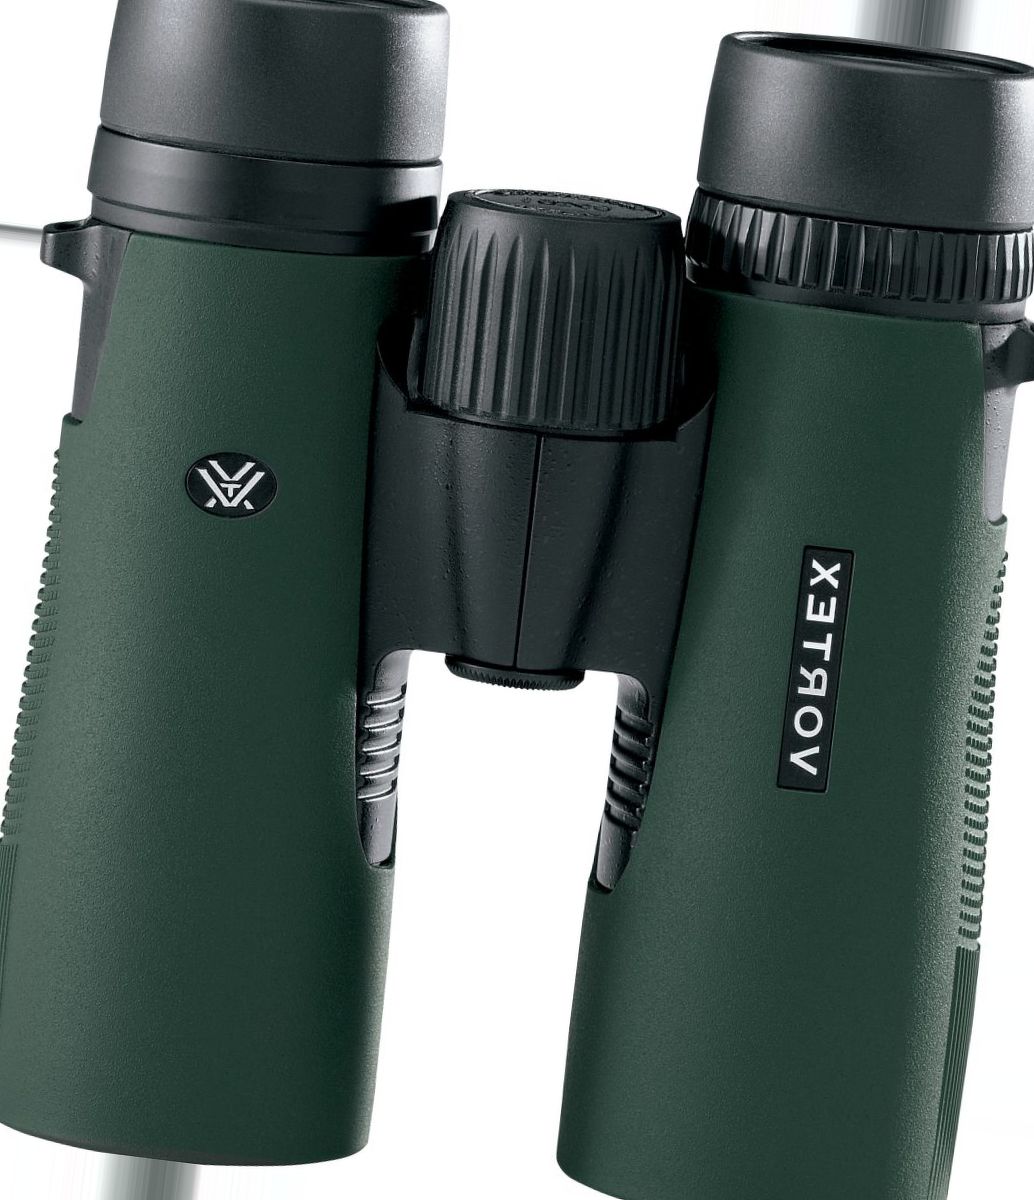 Vortex® Diamondback 8x32 Binoculars